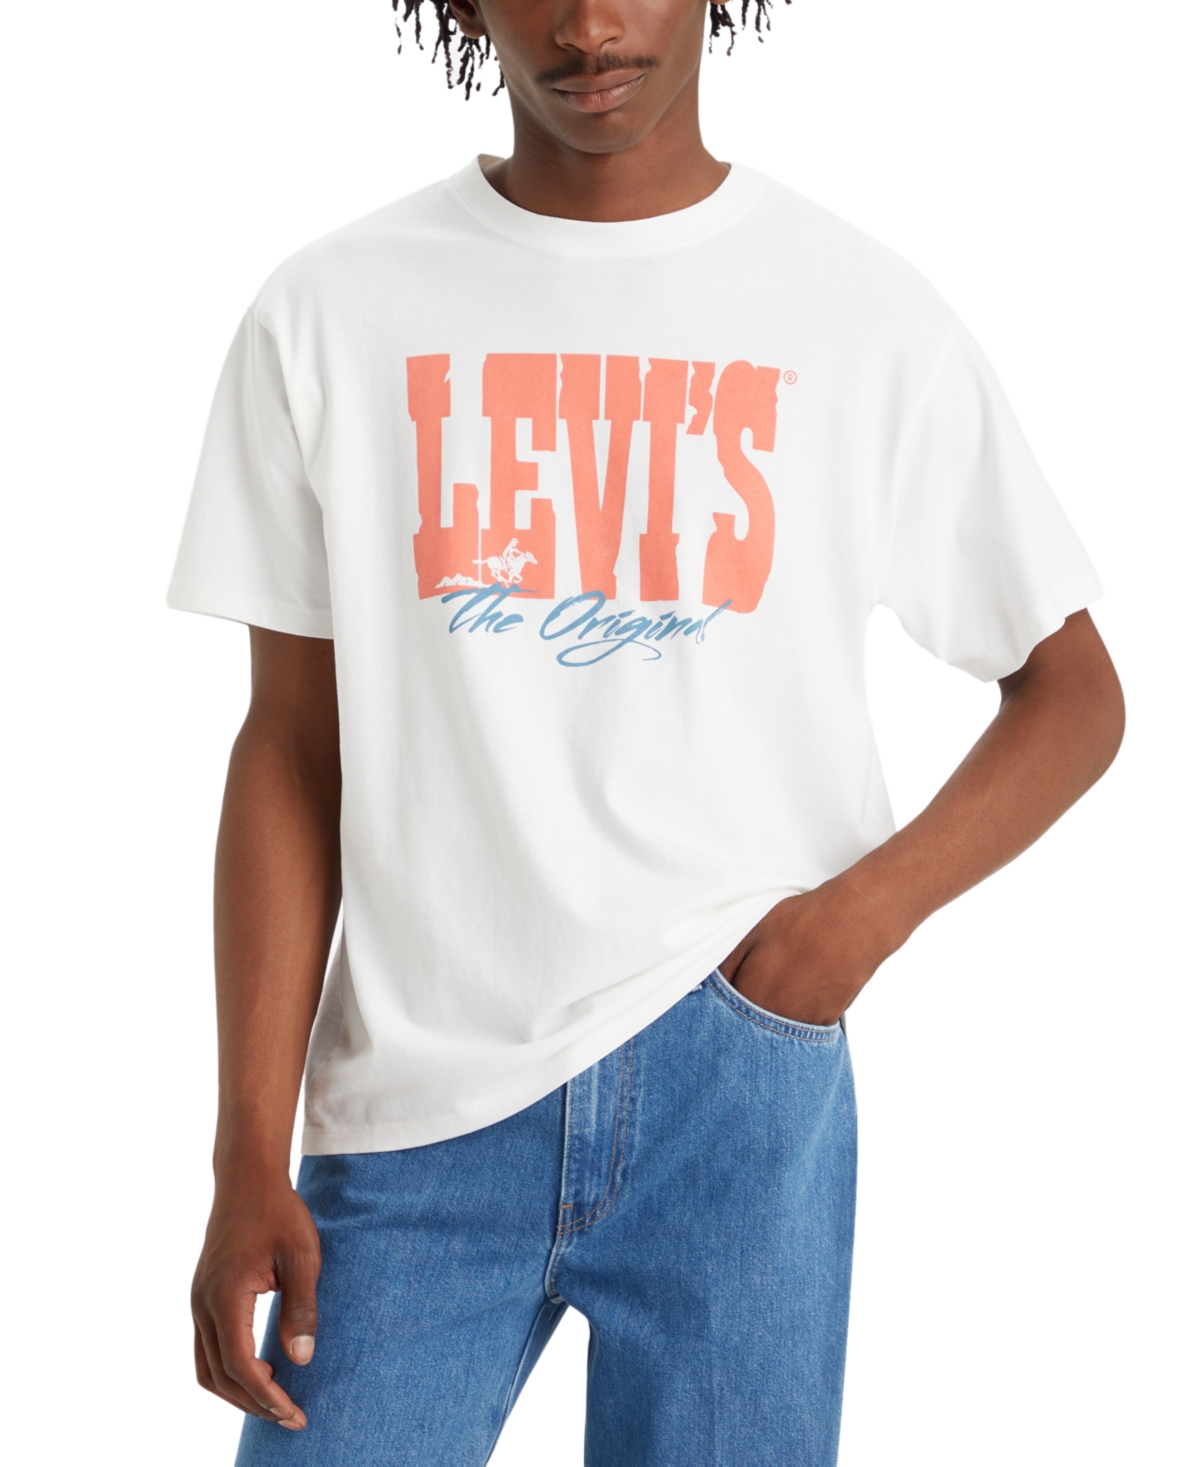 LEVI'S MEN'S VINTAGE-STYLE CREWNECK GRAPHIC T-SHIRT